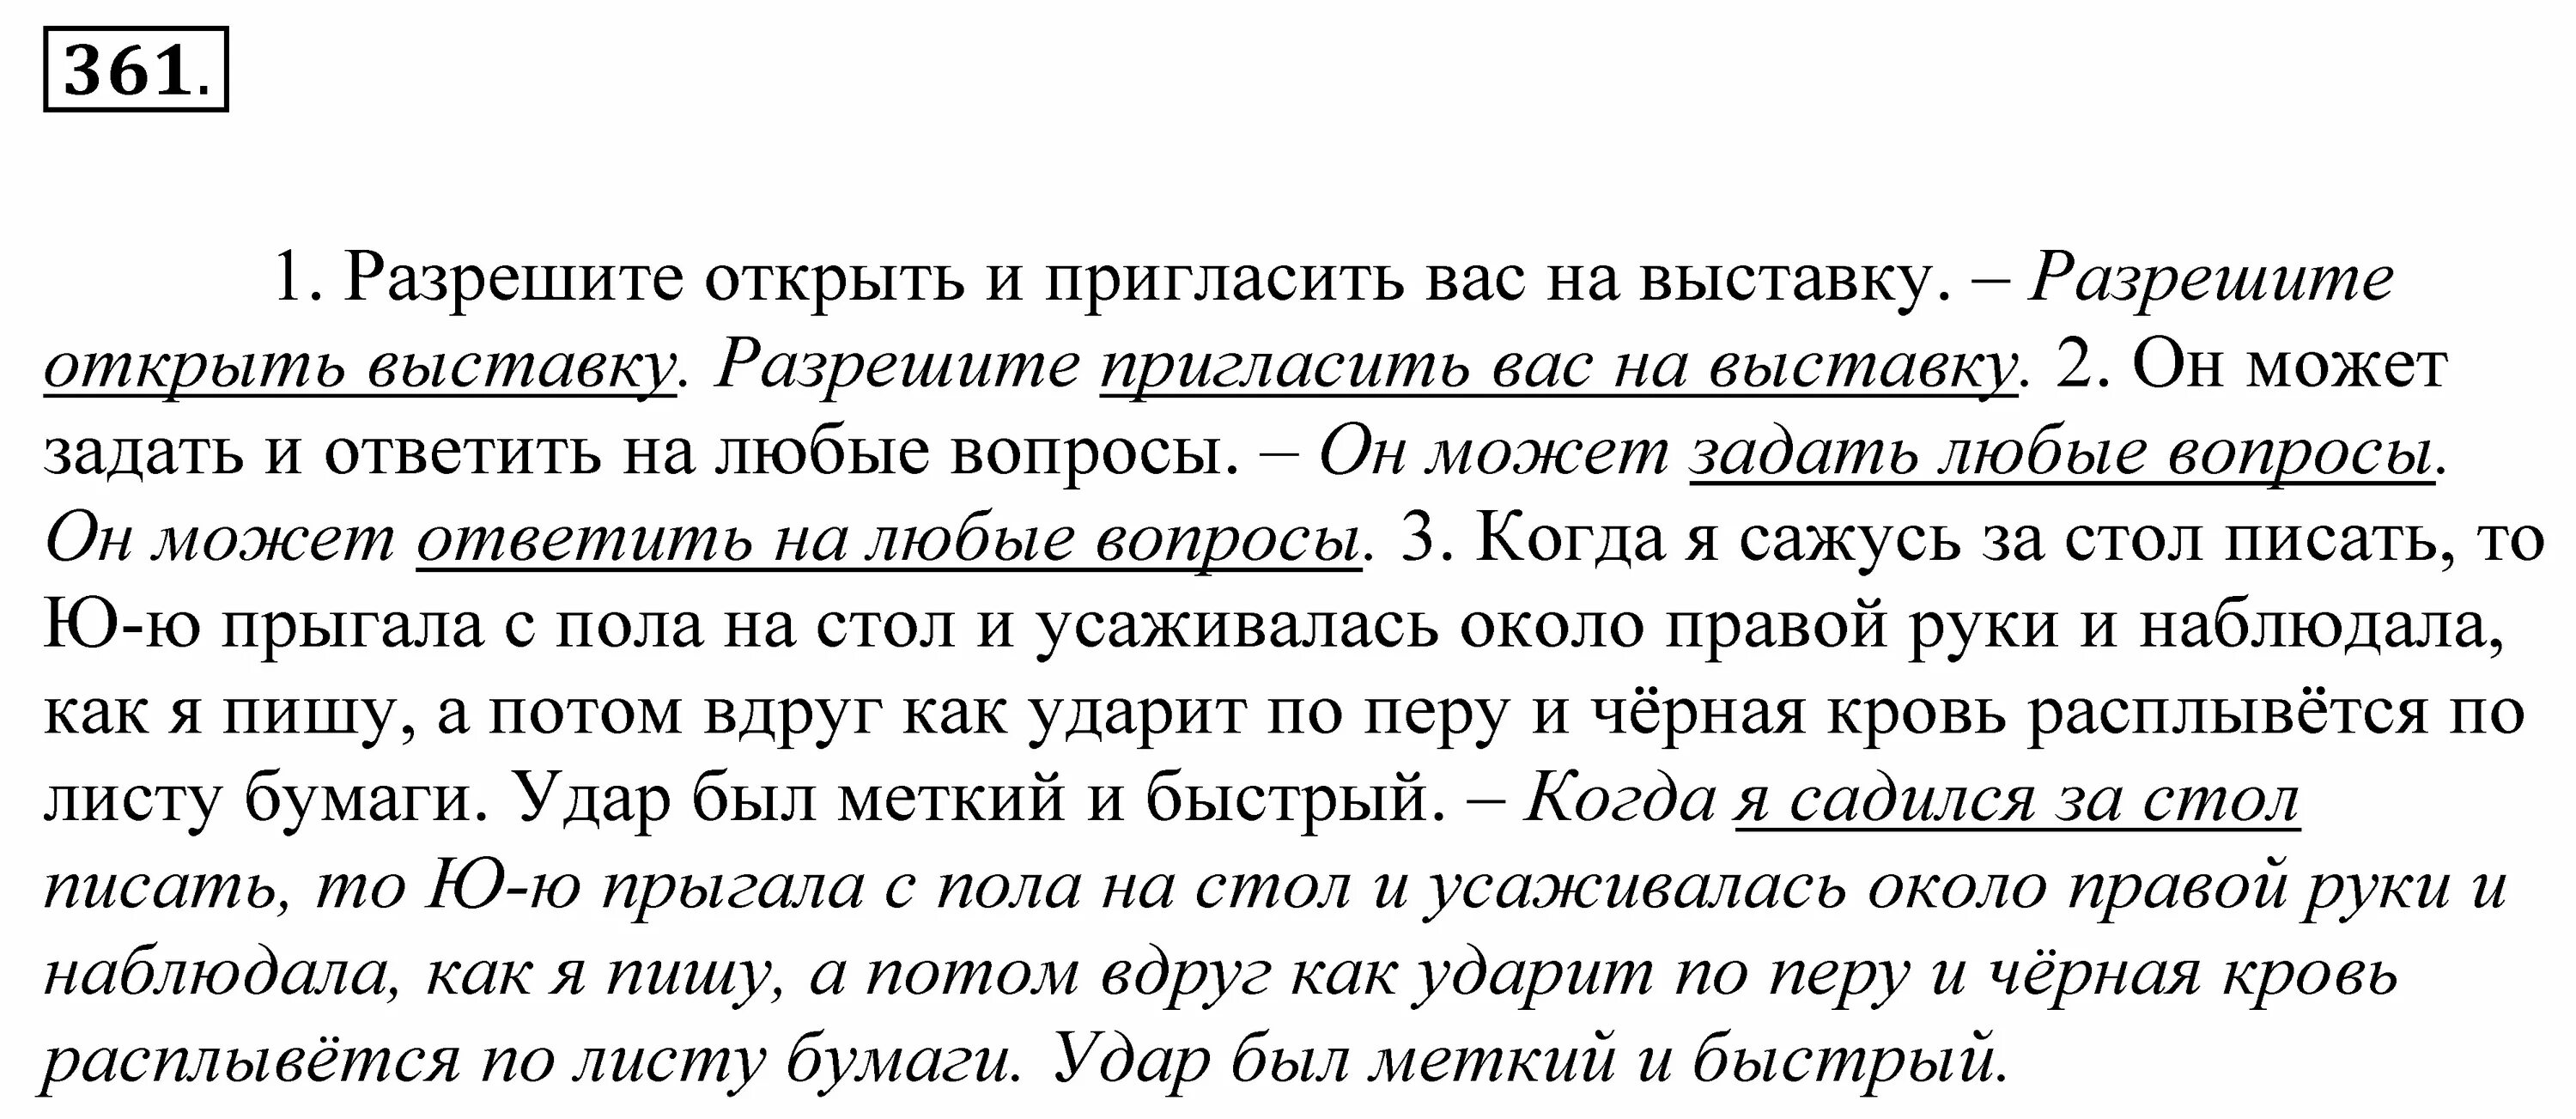 Русский язык 5 упр 674. Упражнение 611 русский язык 5 класс Купалова. Какая ошибка допущена.